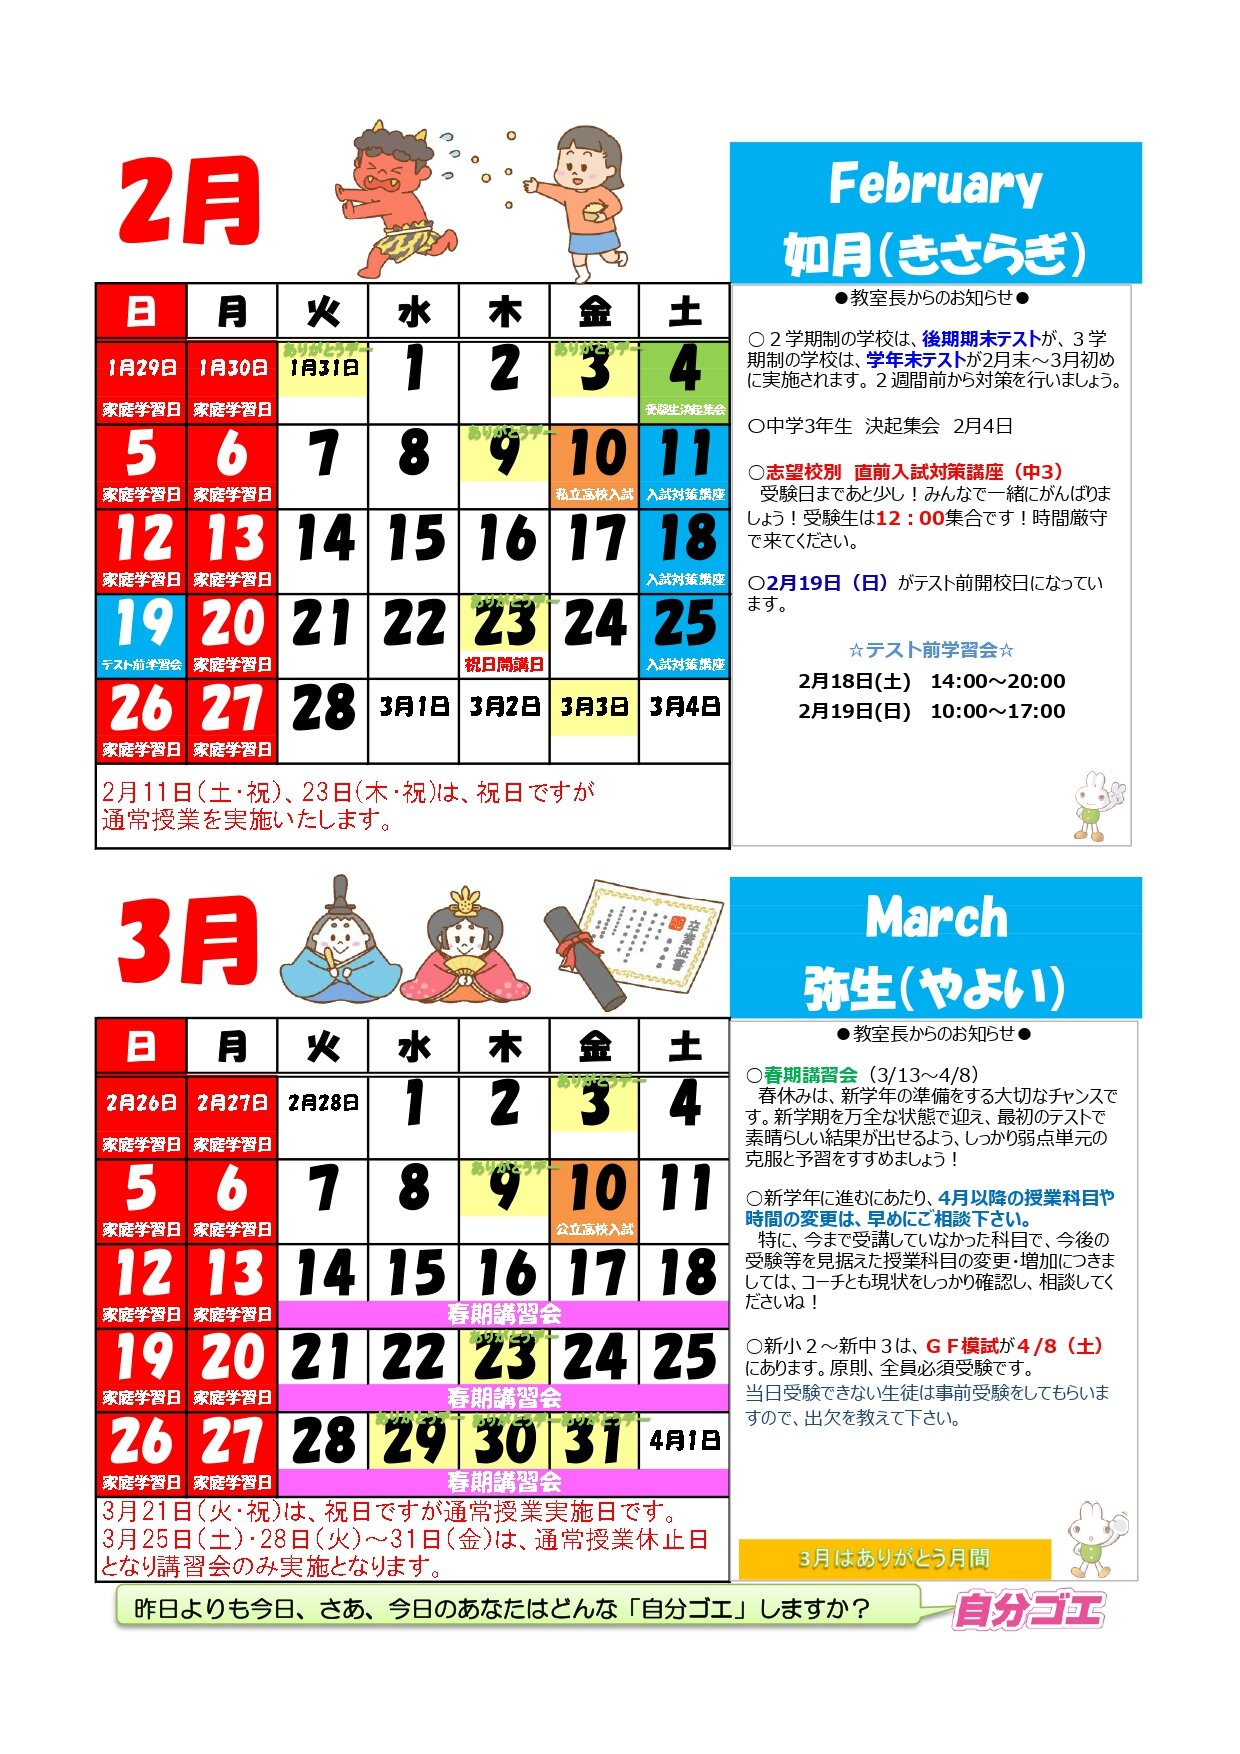 【2022年度】ブースカレンダー2023年2月3月(たて)_page-0001.jpg